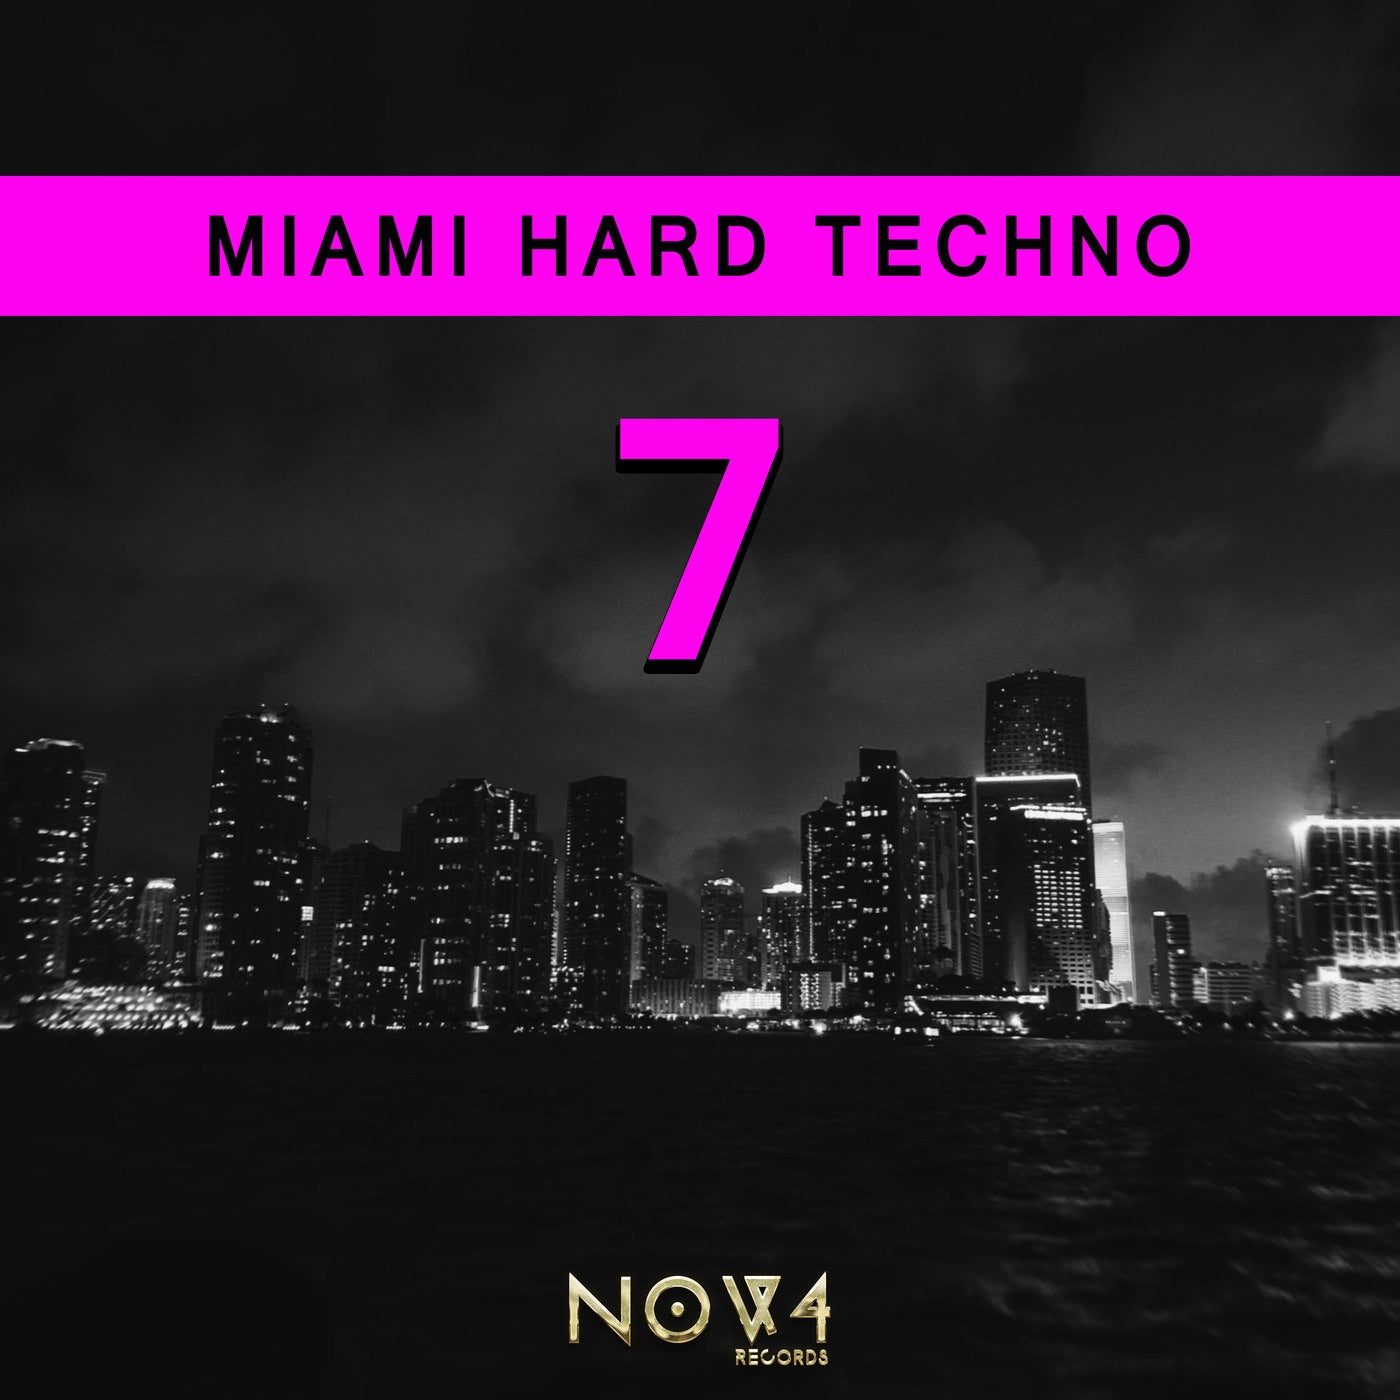 Miami Hard Techno, Vol. 7